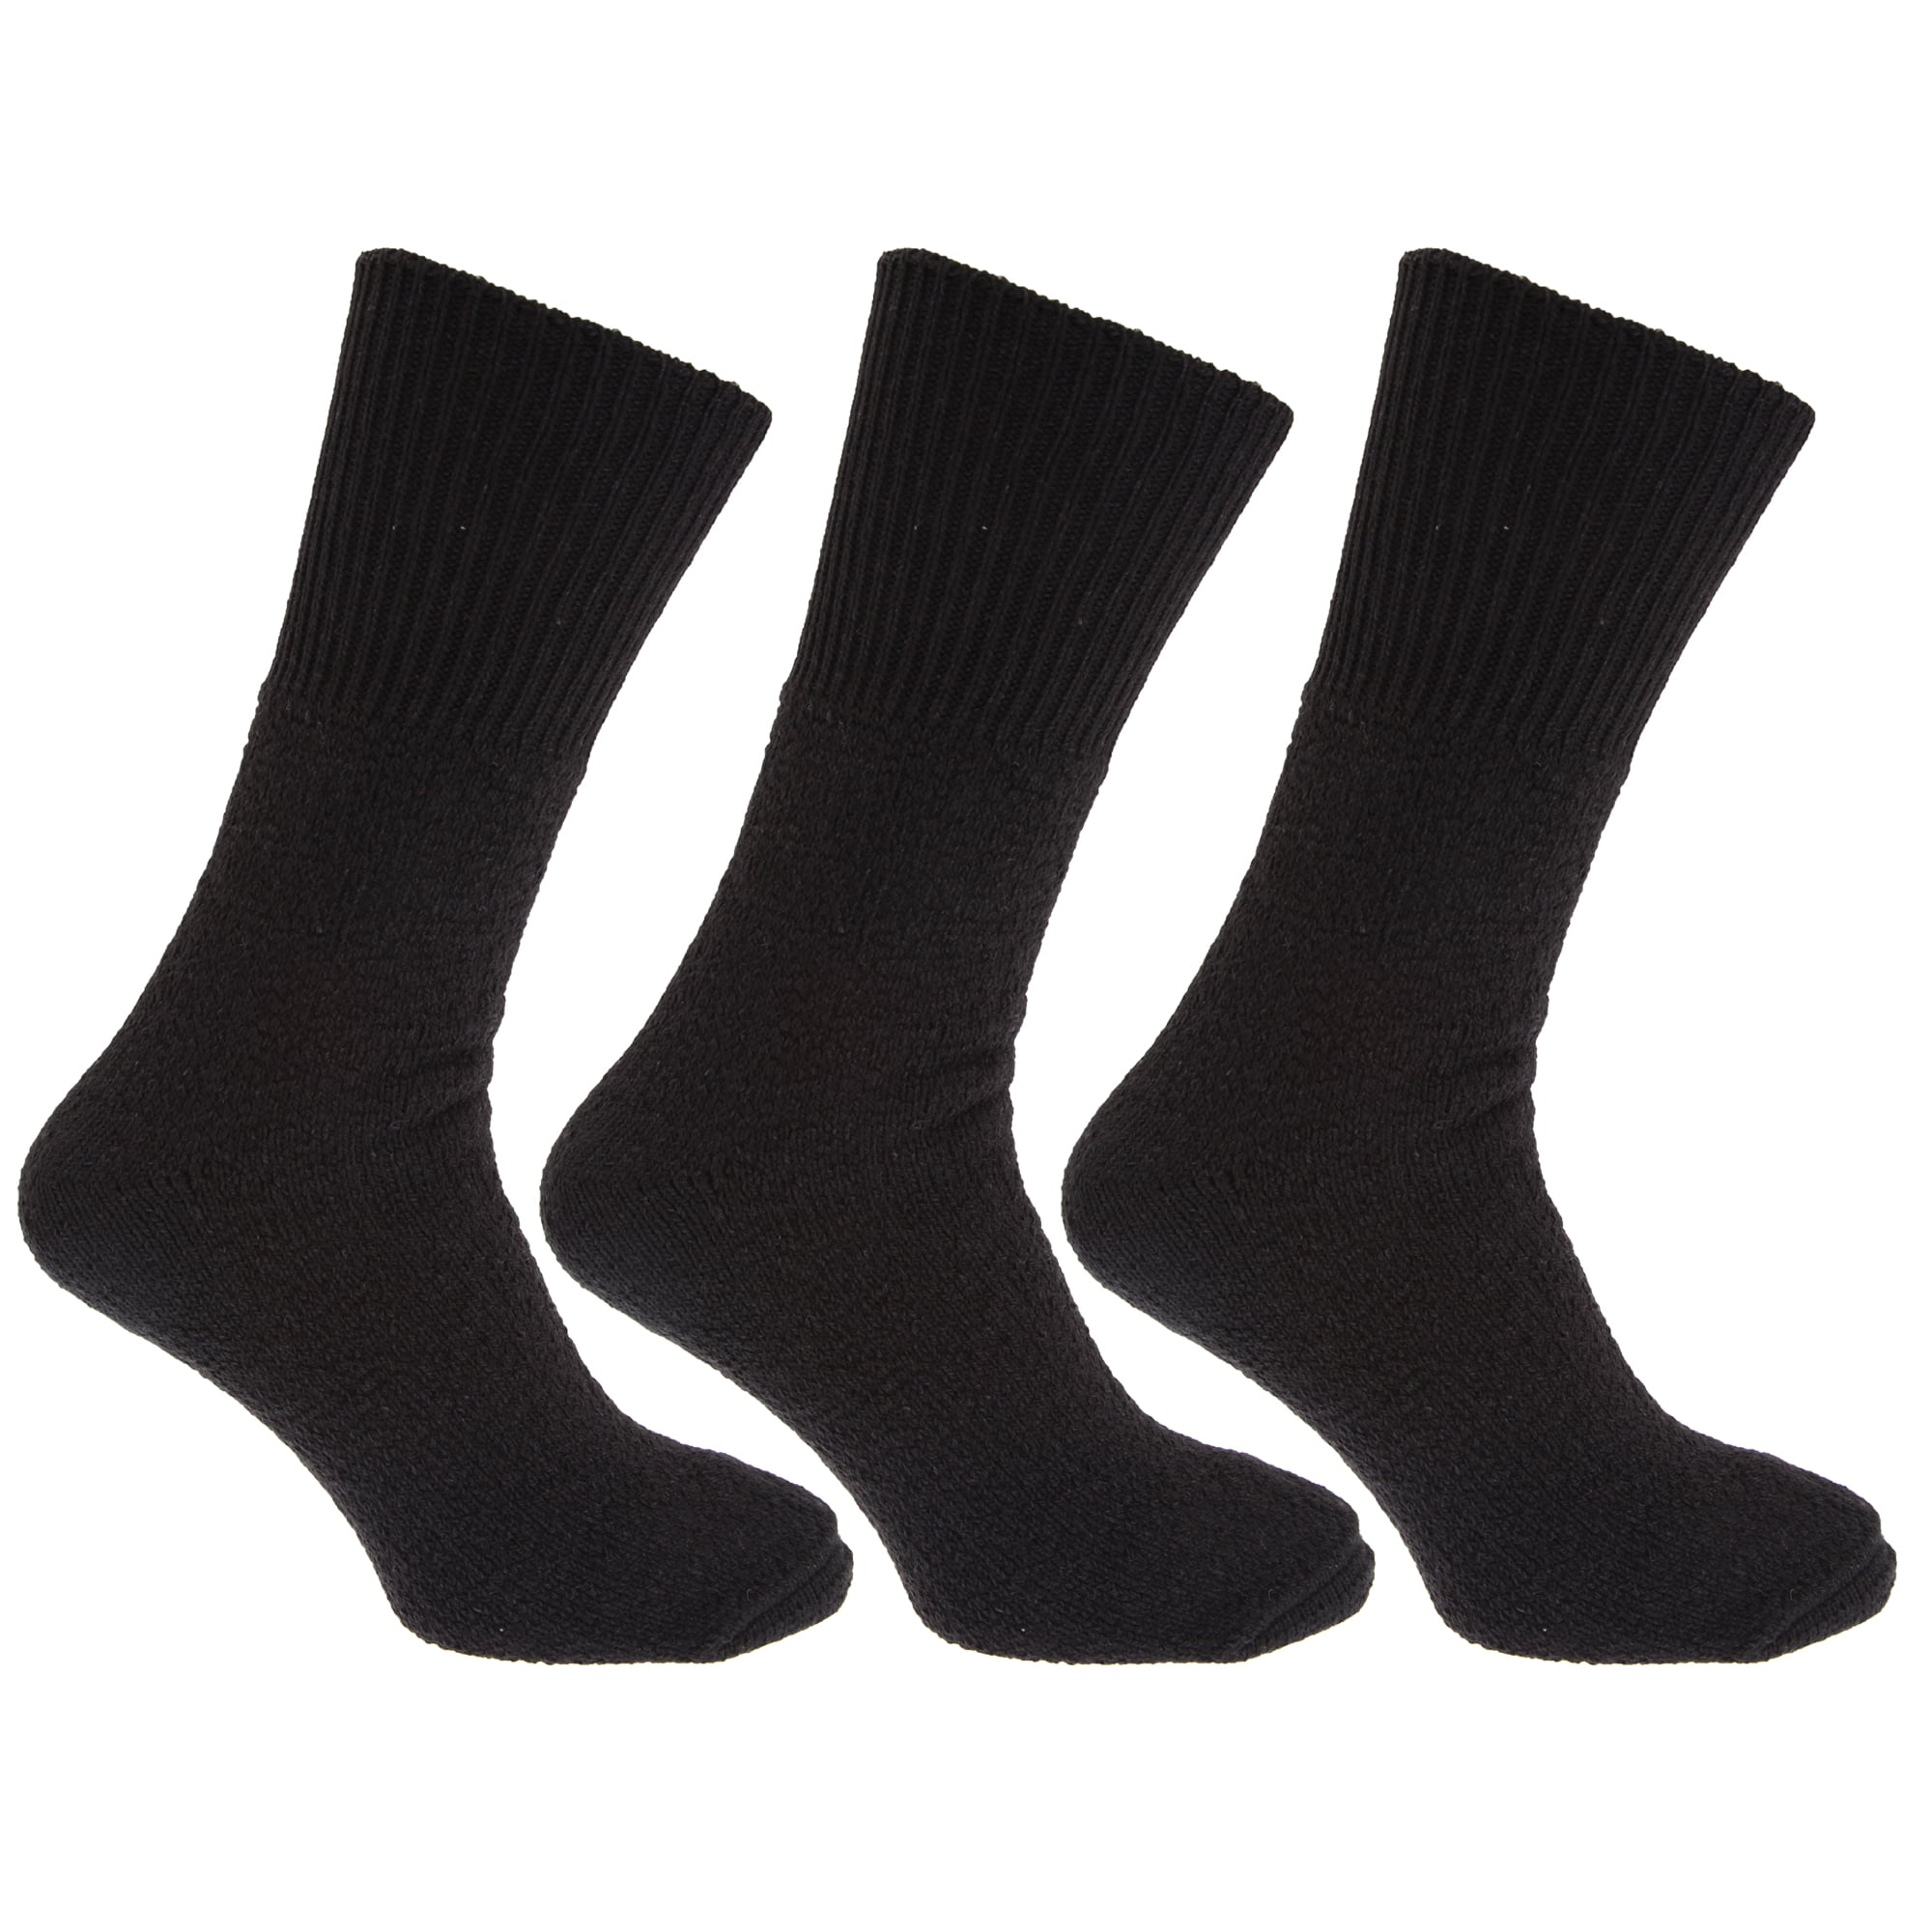 Pack of 3 Men's Non Elastic Bamboo Designer Socks UK 6-11 EU 39-45 